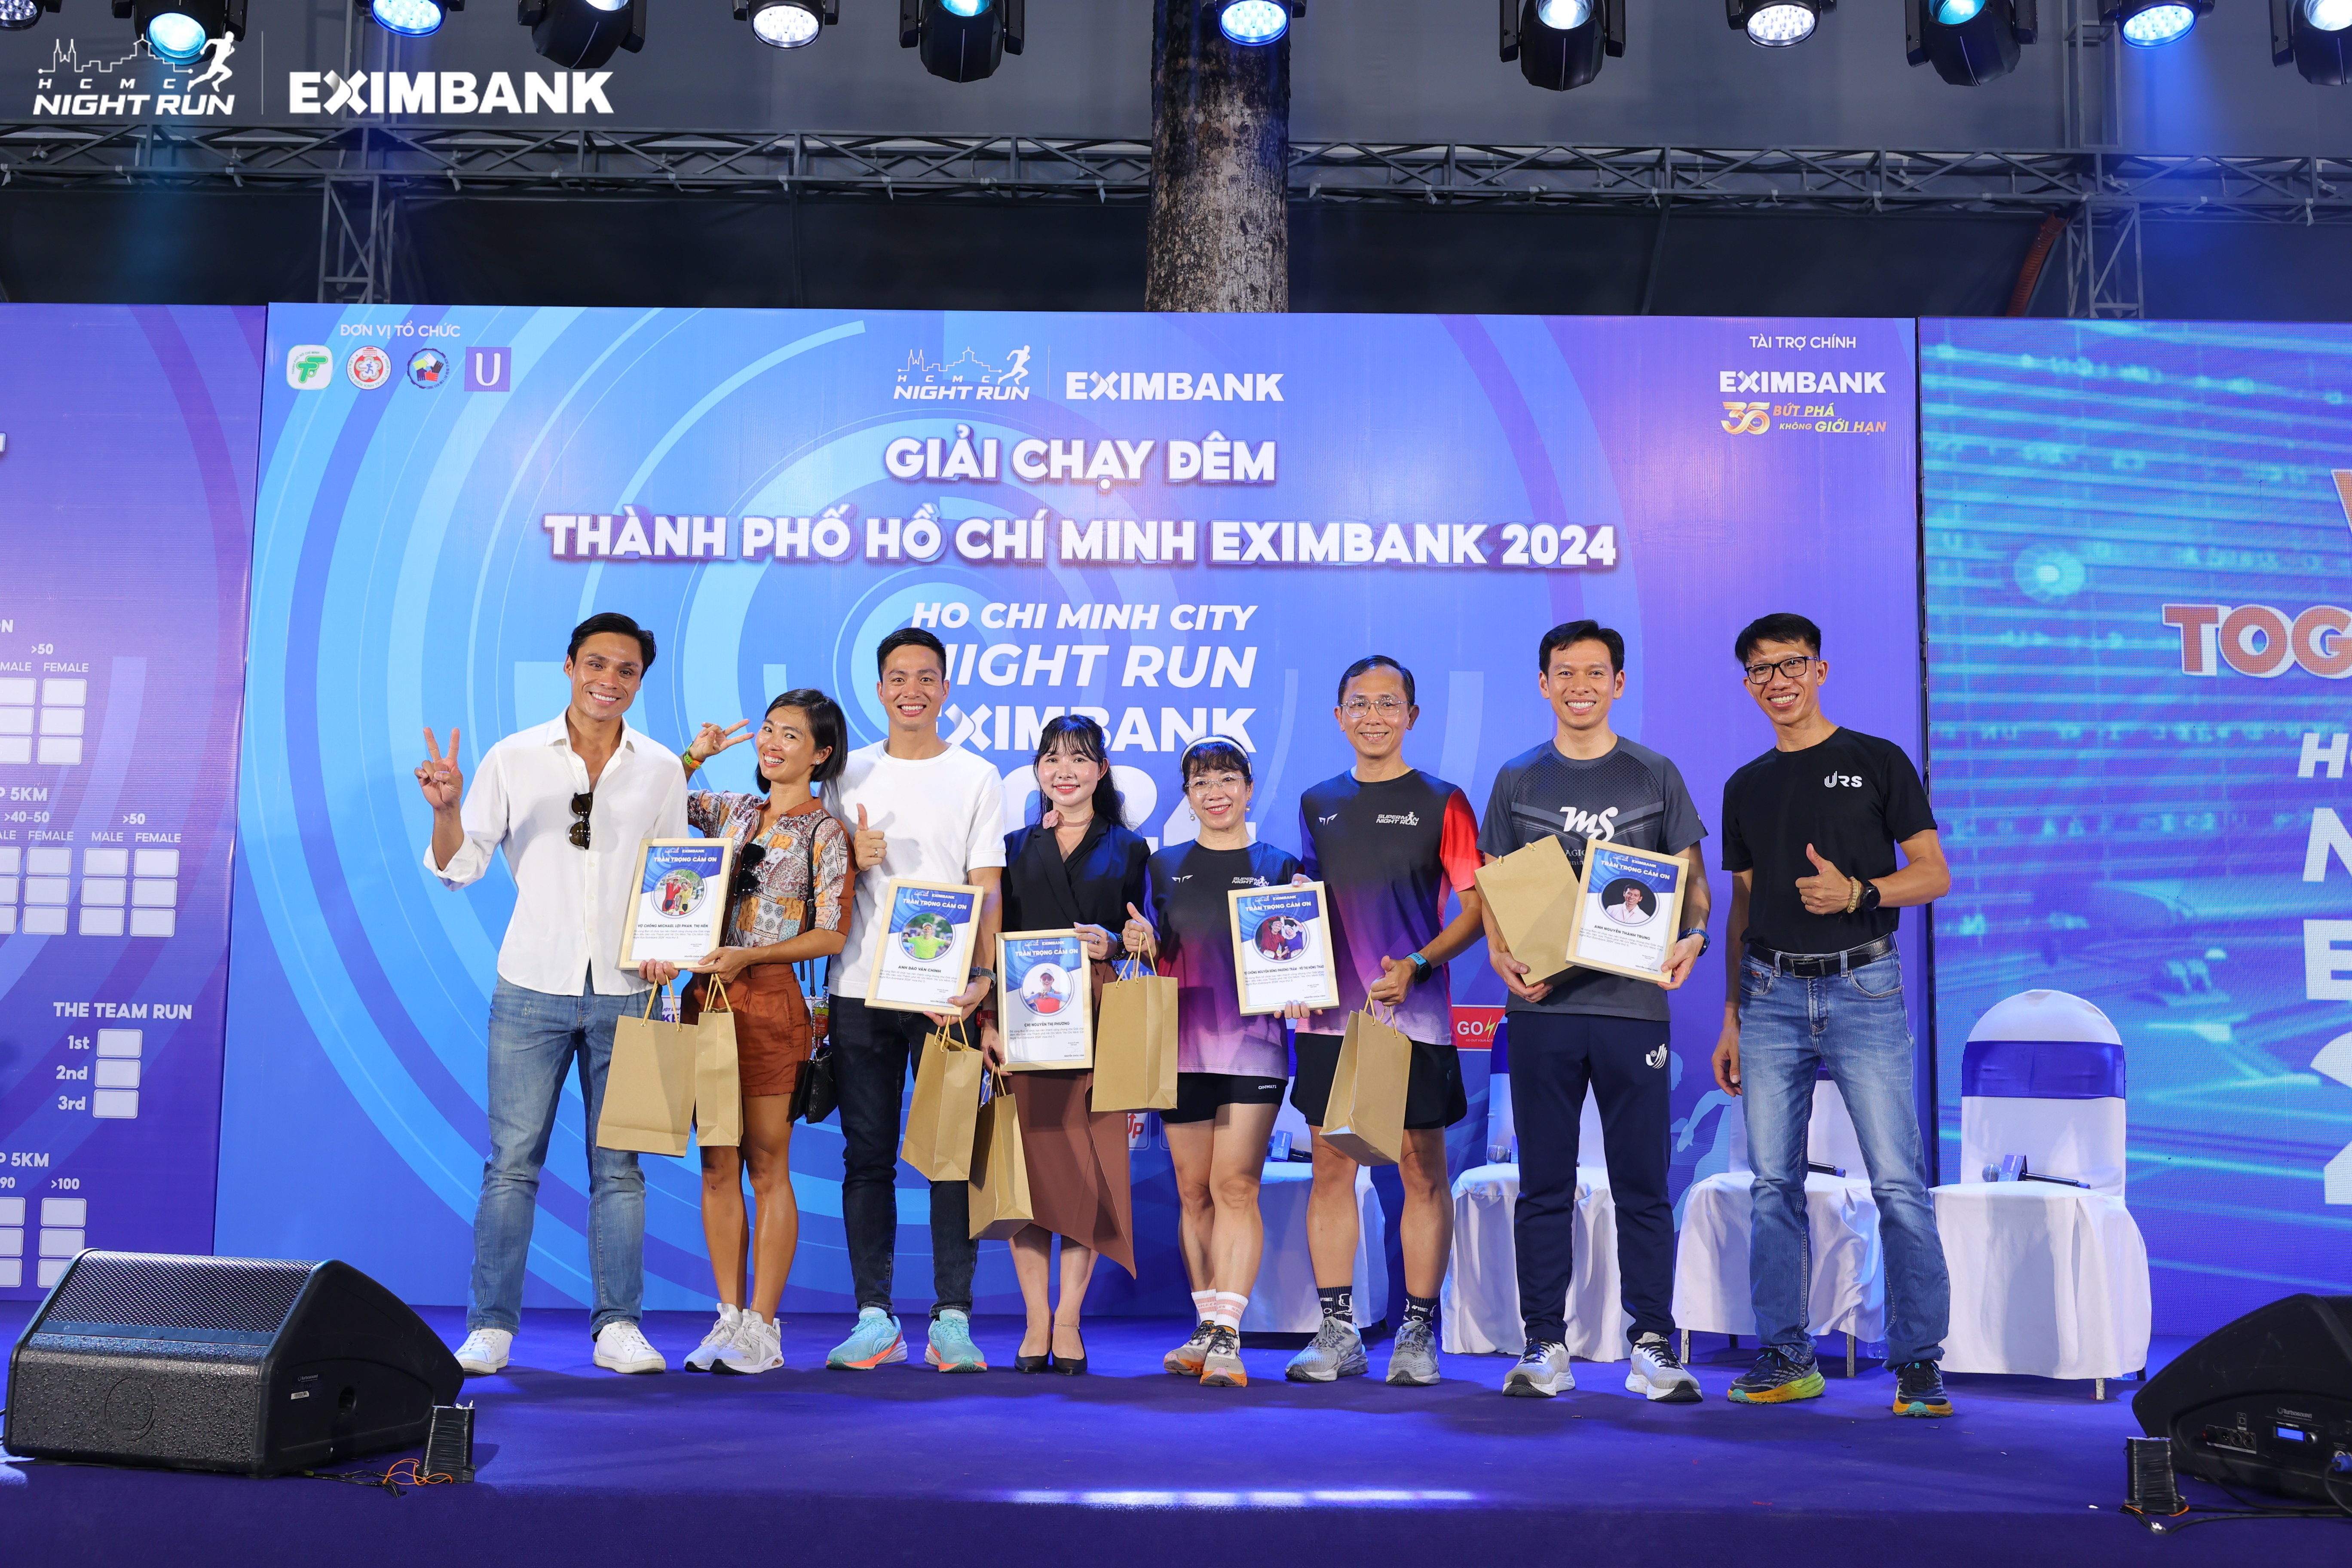 Sôi động với hoạt động trước thềm diễn ra giải đấu  “HO CHI MINH CITY NIGHT RUN EXIMBANK 2024”